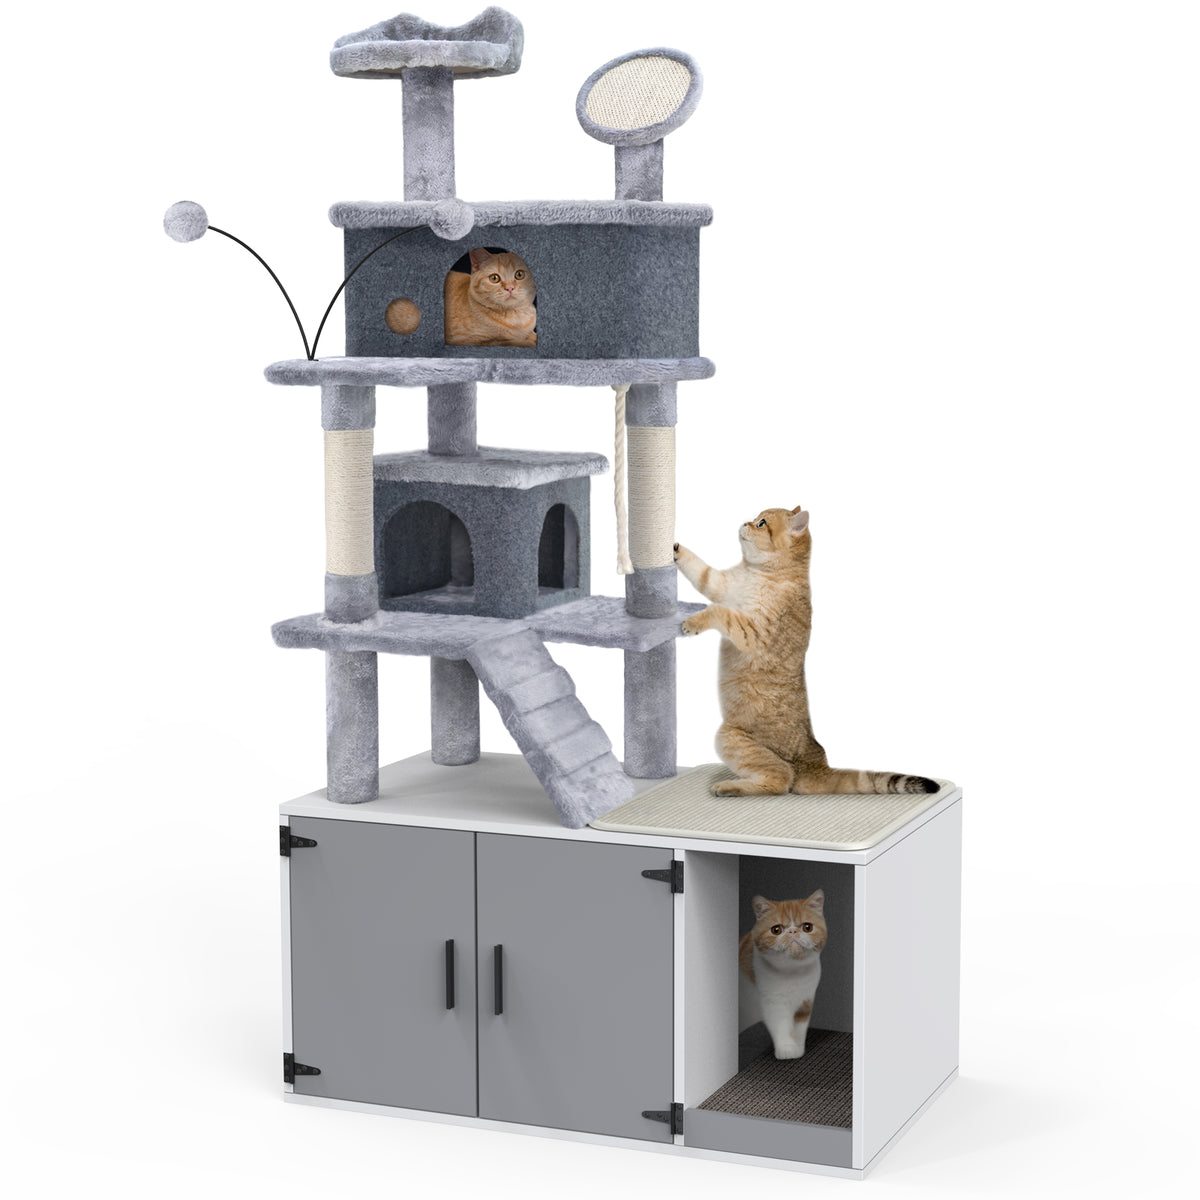 Cat Litter Box Enclosure - New Cat Condos - Premier Litter Box Enclosure